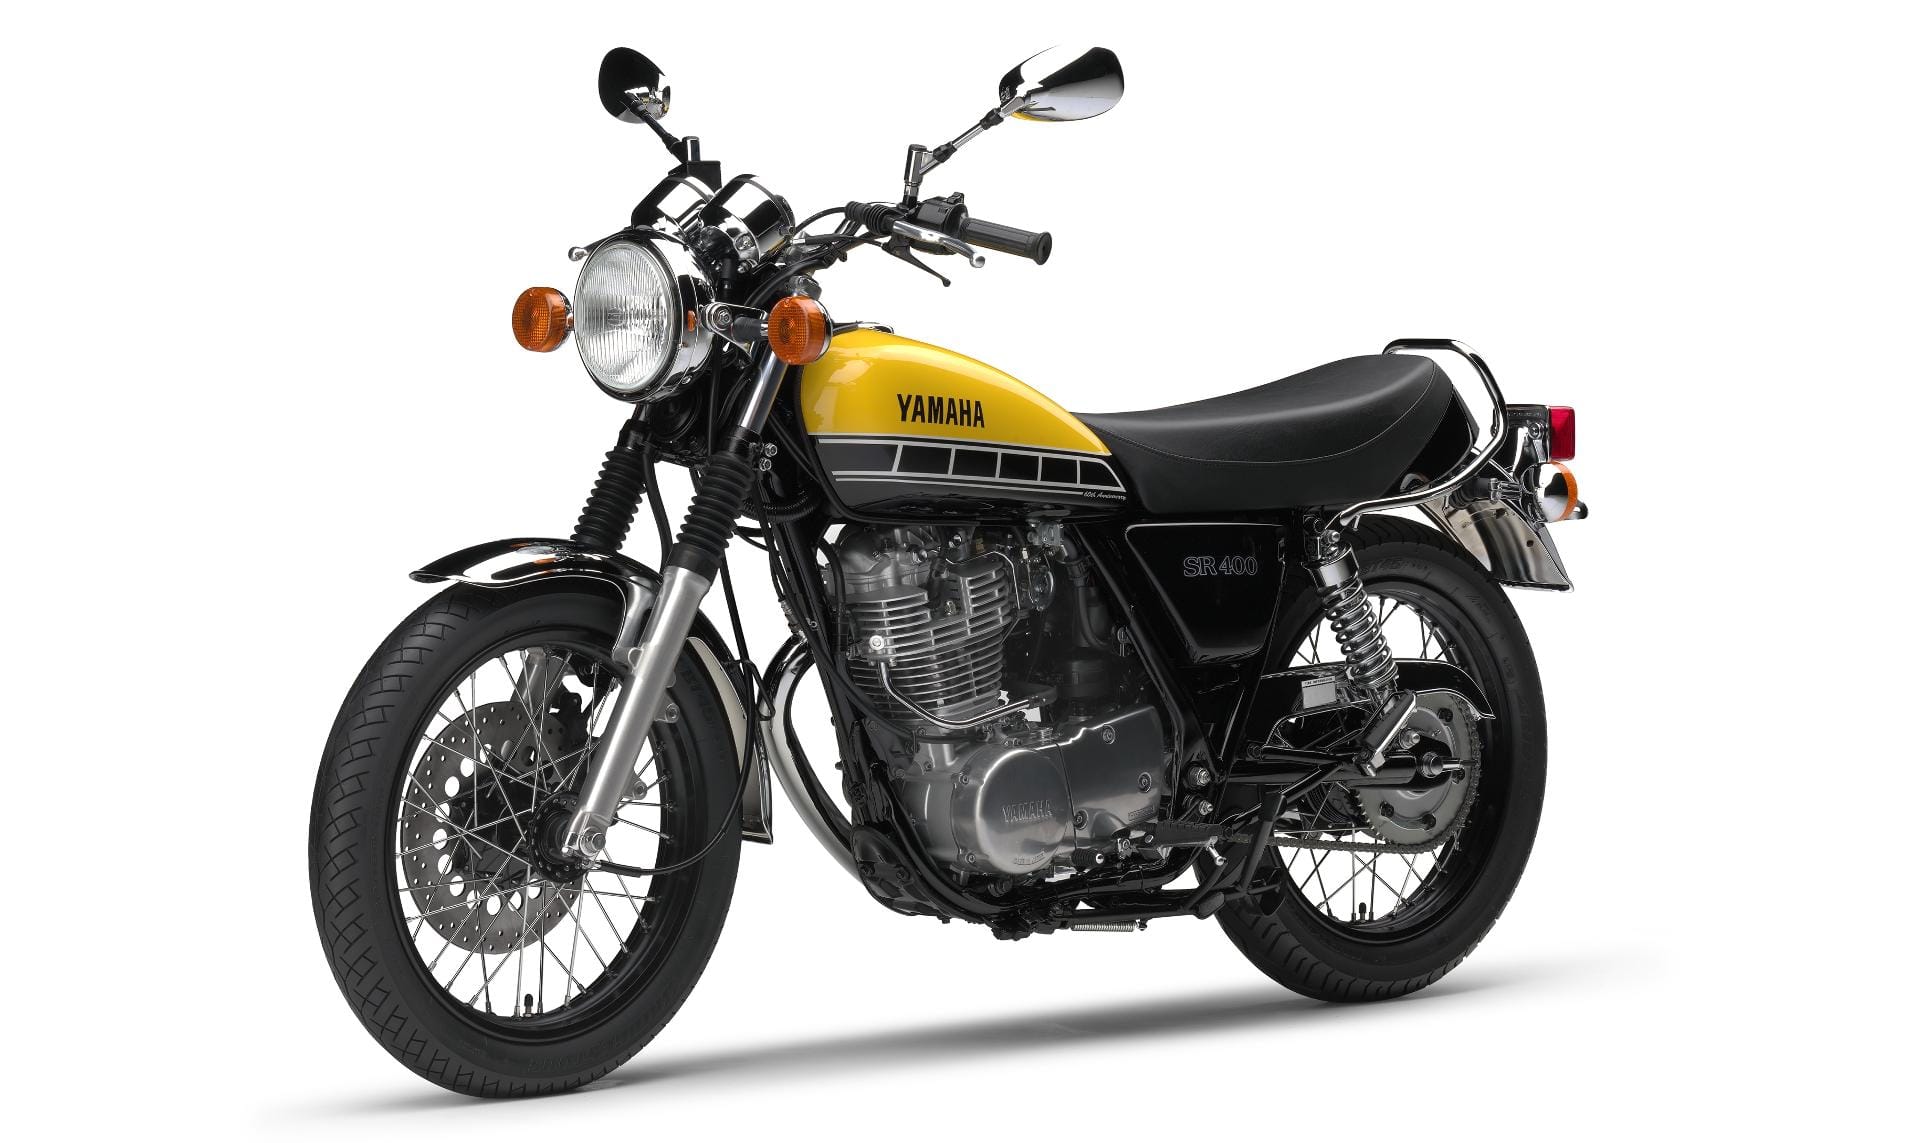 Ein klassisch schönes Retro-Bike ist auch die Yamaha SR 400.